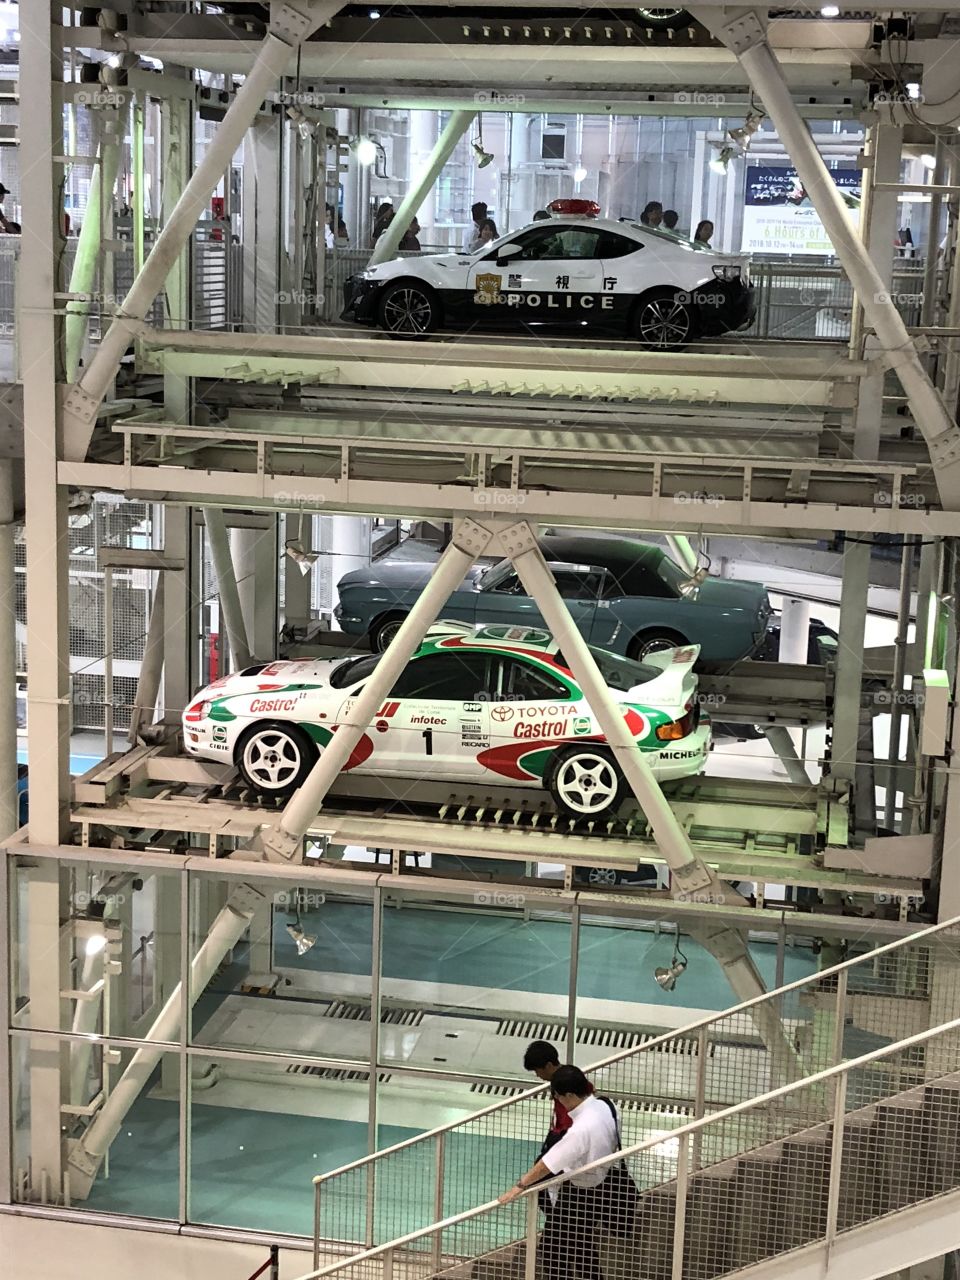 Toyota’s garage exhibit 